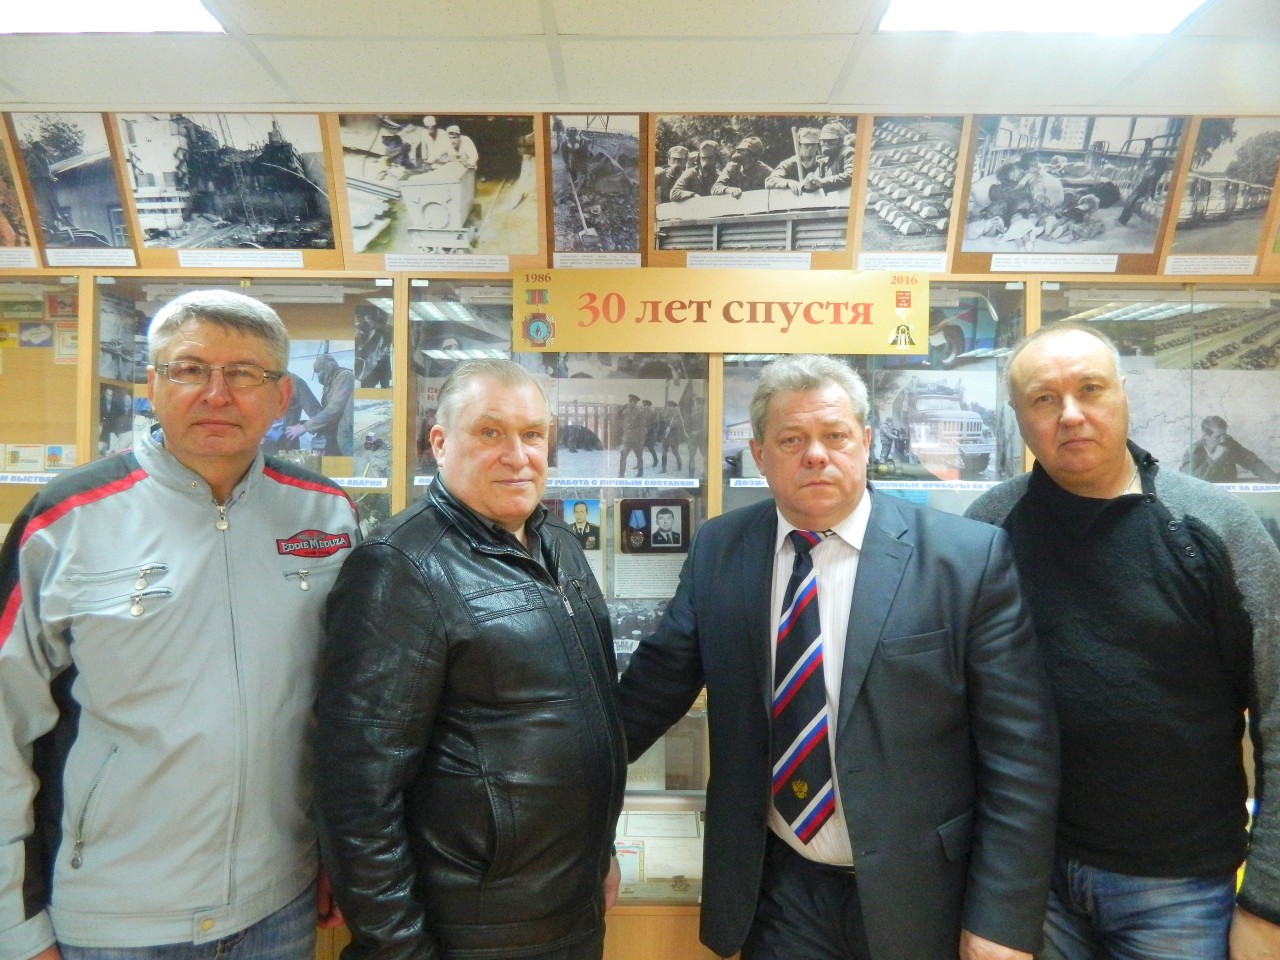 Die Liquidatoren (von links nach rechts): Wjatscheslaw Filonow, Wladimir Pawlow, Wladimir Naumow und Sergei Aldochin im Tschernobyl-Museum des Invalidenverbands Tula.